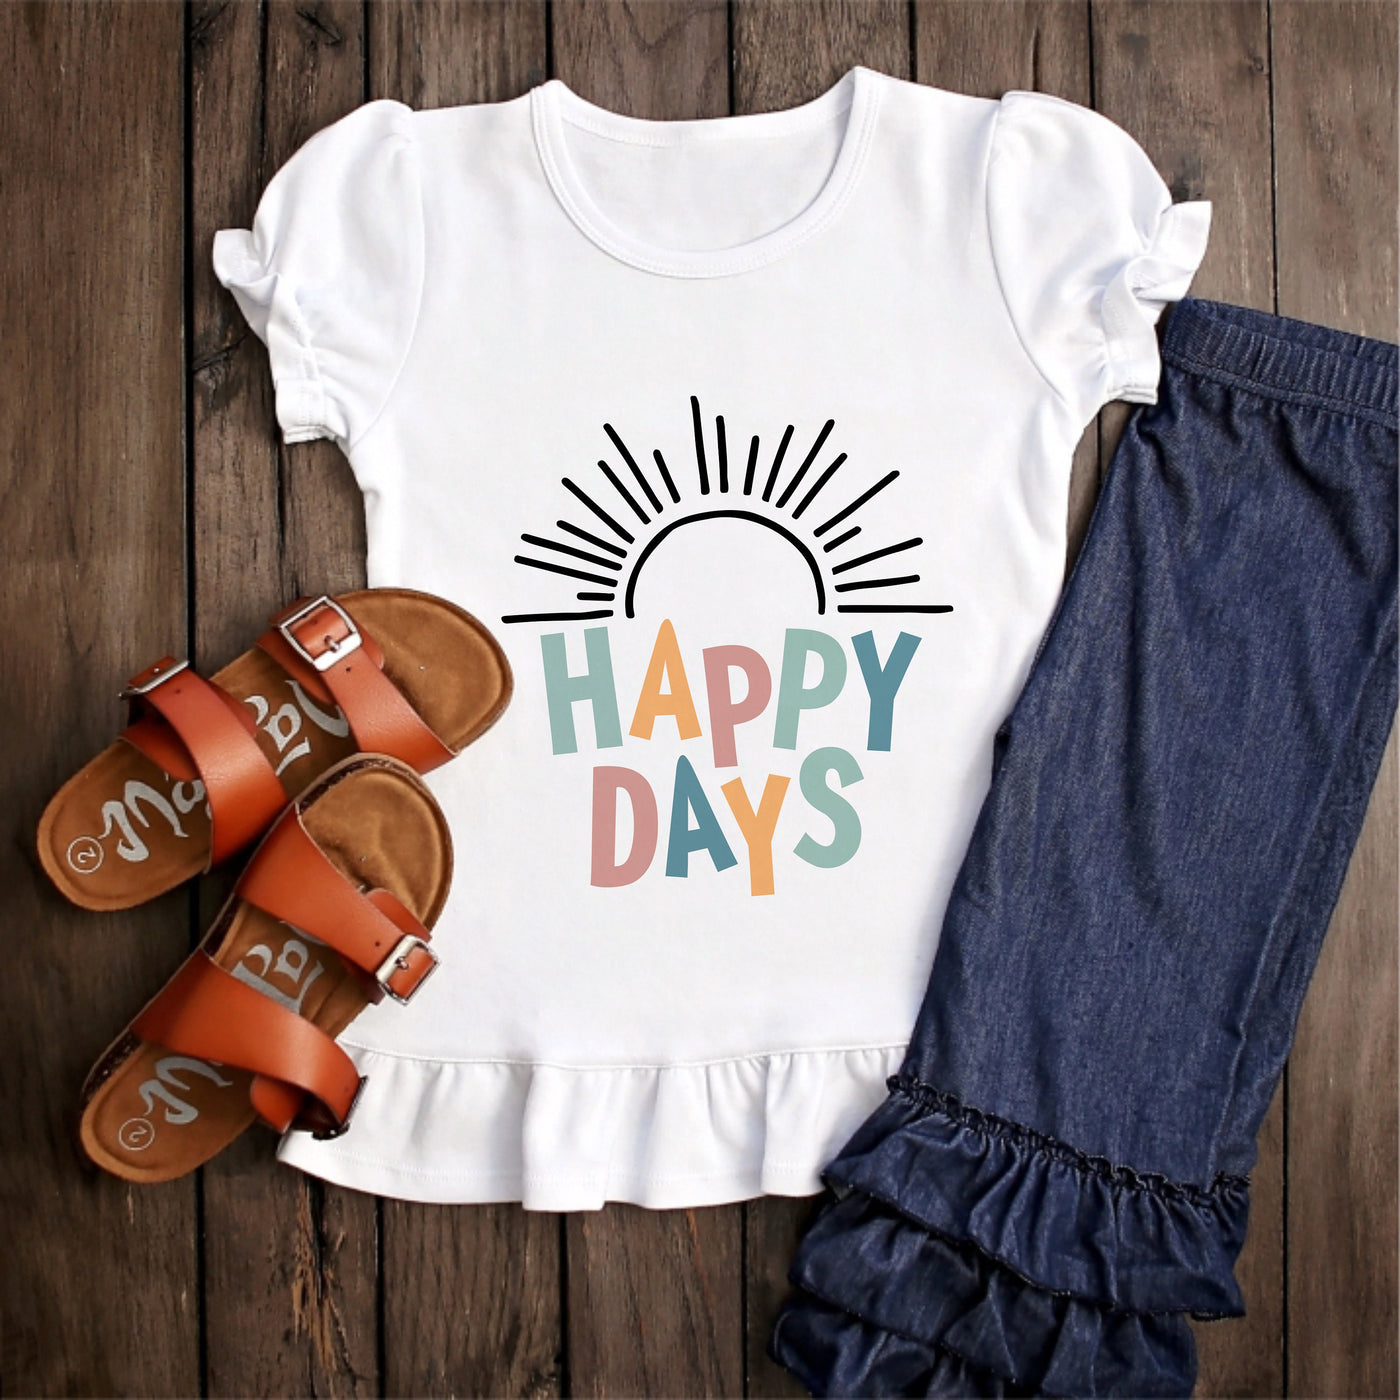 Happy Toddler Shirt, Preschooler Shirt, Cute Toddler Tee, Happy Days Shirt, Hippie Toddler Shirt, Cute Toddler Girl Shirt, Toddler Shirt